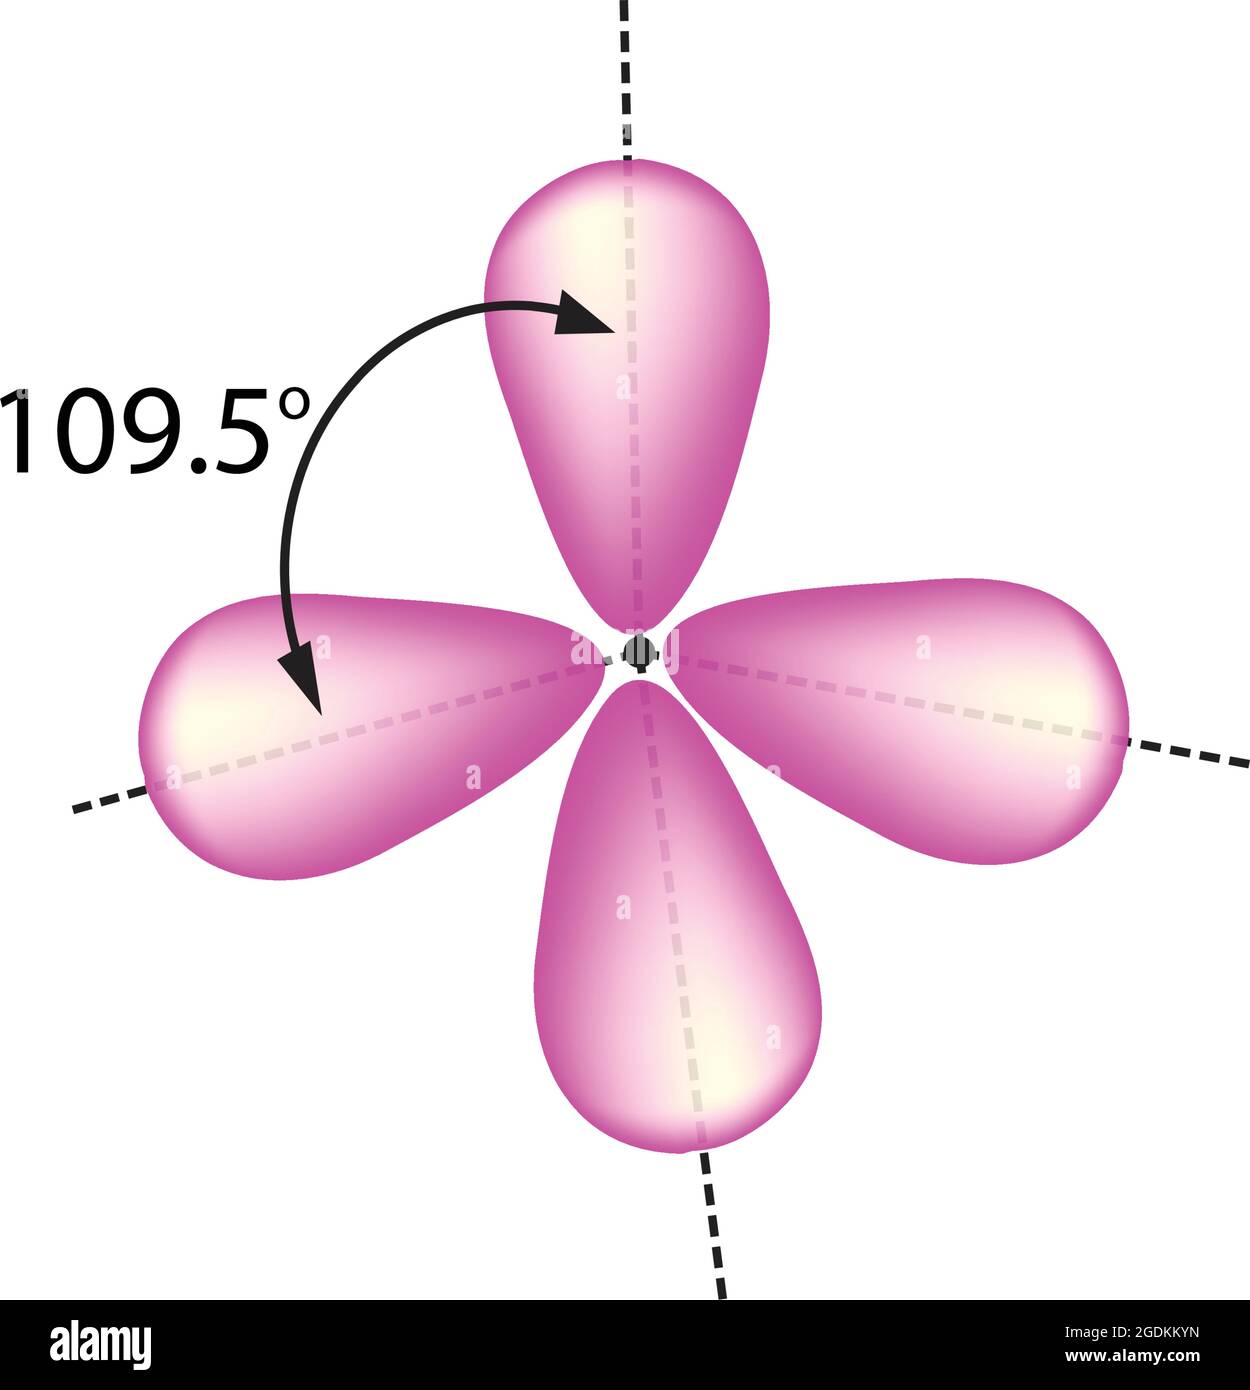 disposizione tetraedrica di ibridazione, il concetto di miscelazione di orbitale atomici in nuovi orbitanti ibridi adatti per l'appaiamento di elettroni Illustrazione Vettoriale